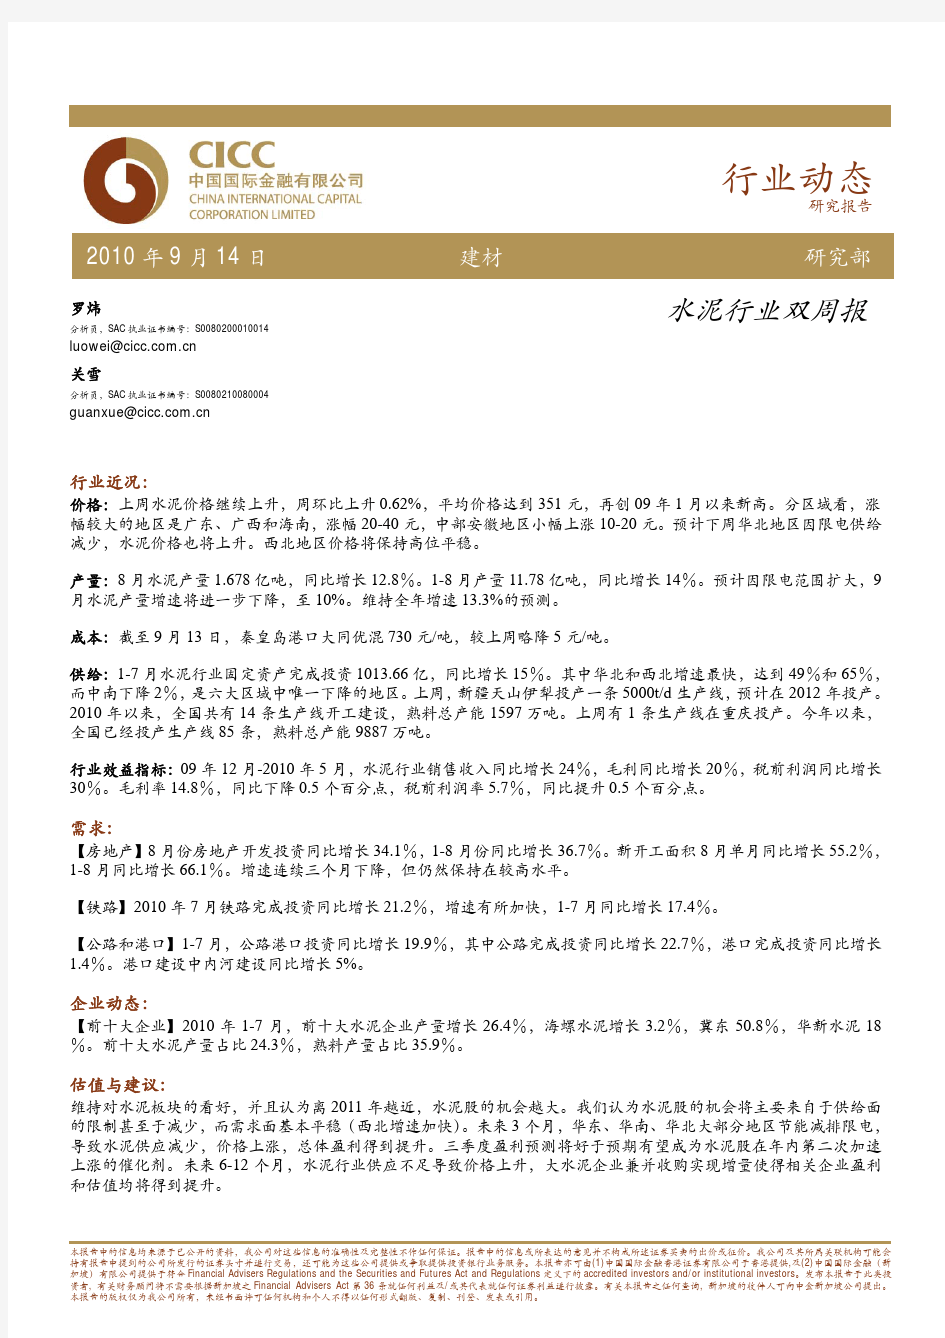 水泥行业双周报—20100914—罗炜,关雪(中金)